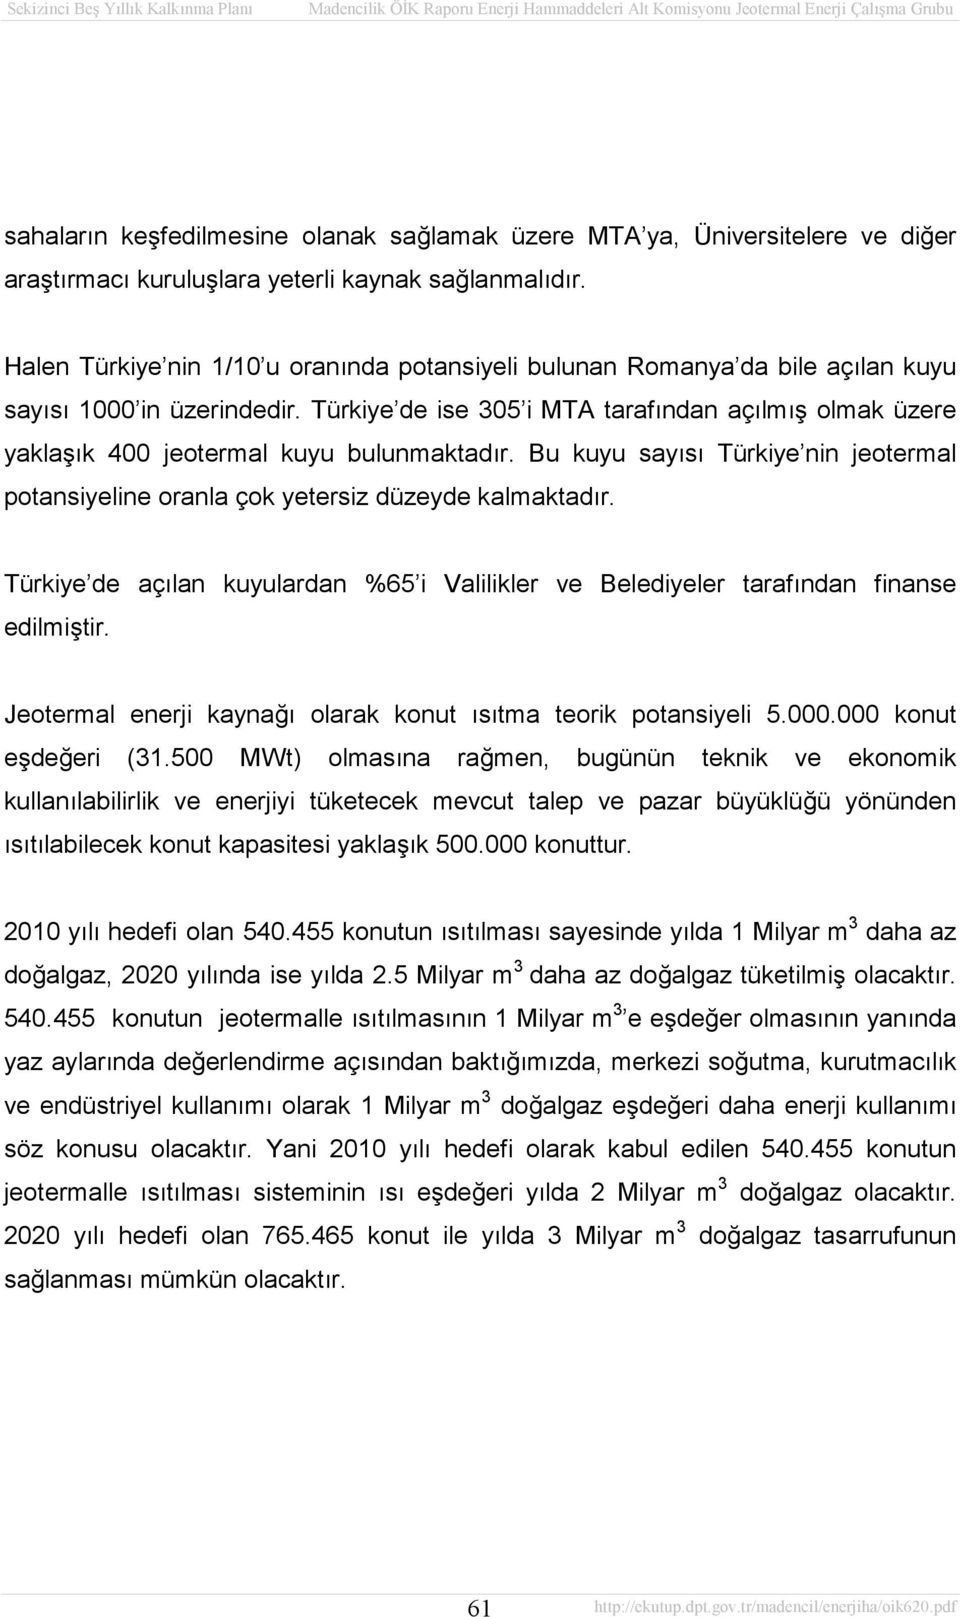 Türkiye de ise 305 i MTA tarafından açılmış olmak üzere yaklaşık 400 jeotermal kuyu bulunmaktadır. Bu kuyu sayısı Türkiye nin jeotermal potansiyeline oranla çok yetersiz düzeyde kalmaktadır.